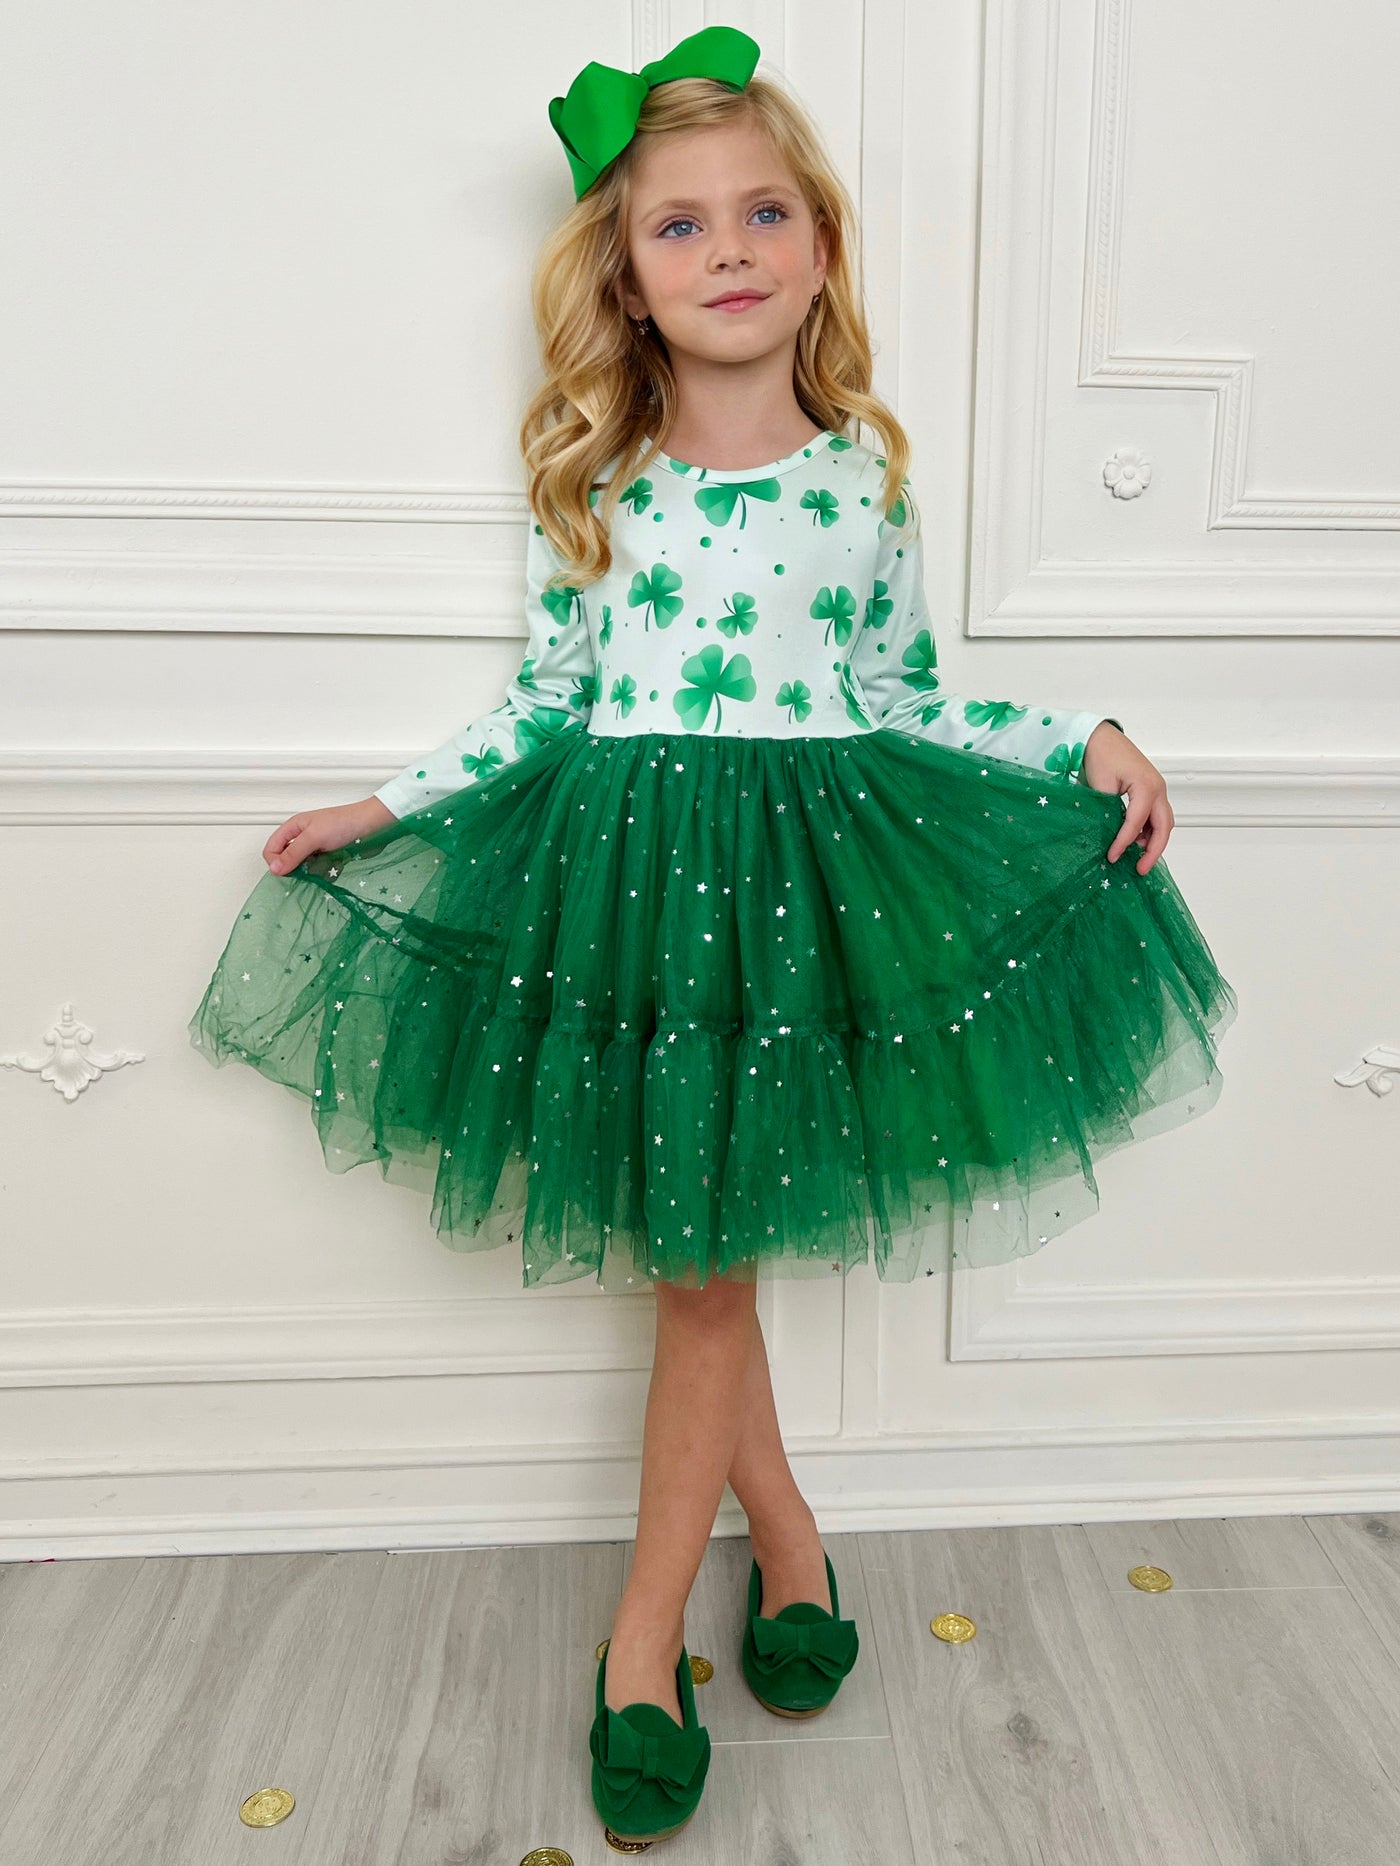 Mia Belle Girls Clover Tutu Dress | Girls St. Patrick's Day Dresses